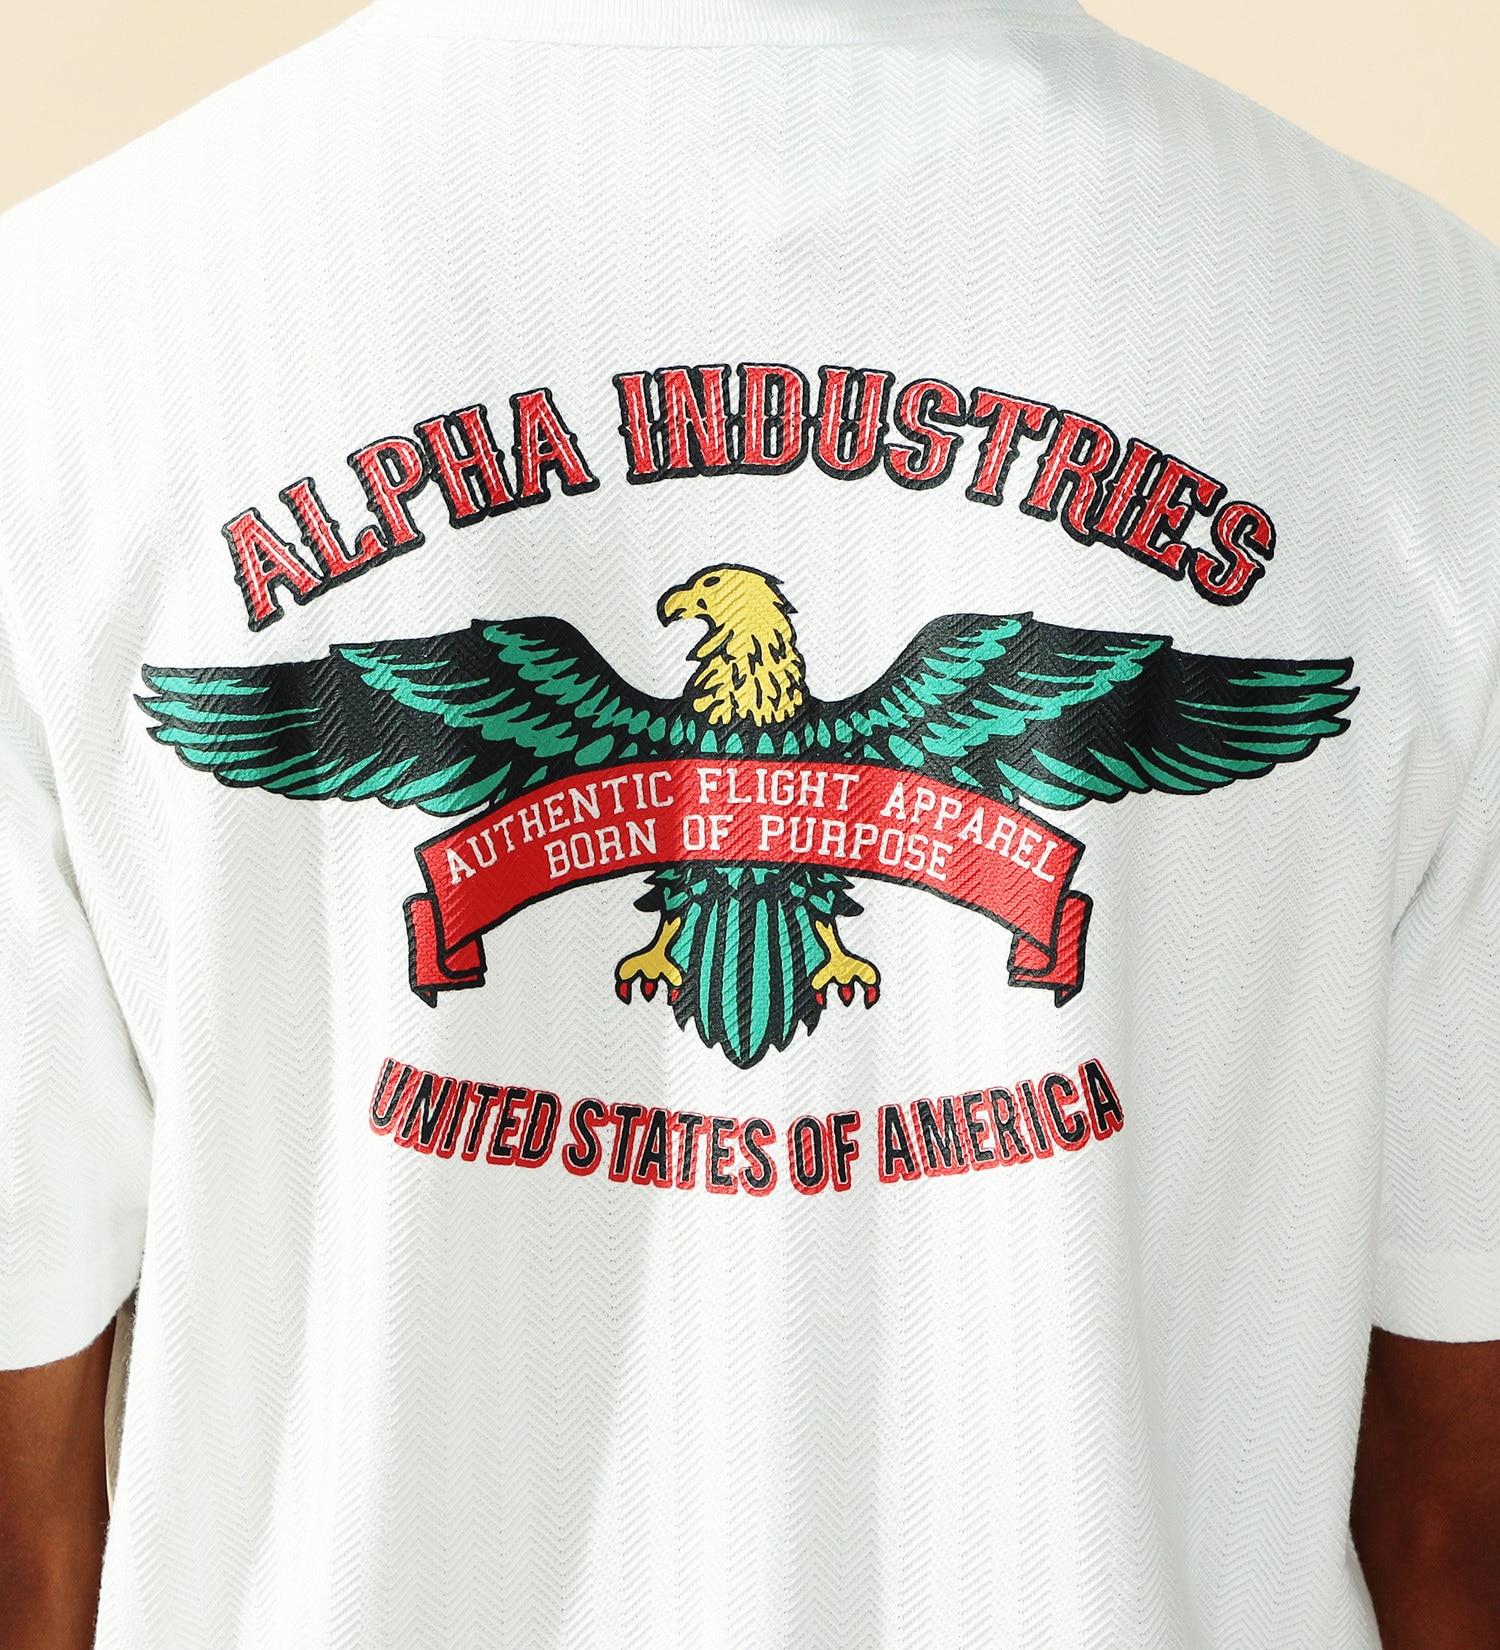 ALPHA(アルファ)のヘリンボーン バックプリントTシャツ 半袖|トップス/Tシャツ/カットソー/メンズ|ホワイト